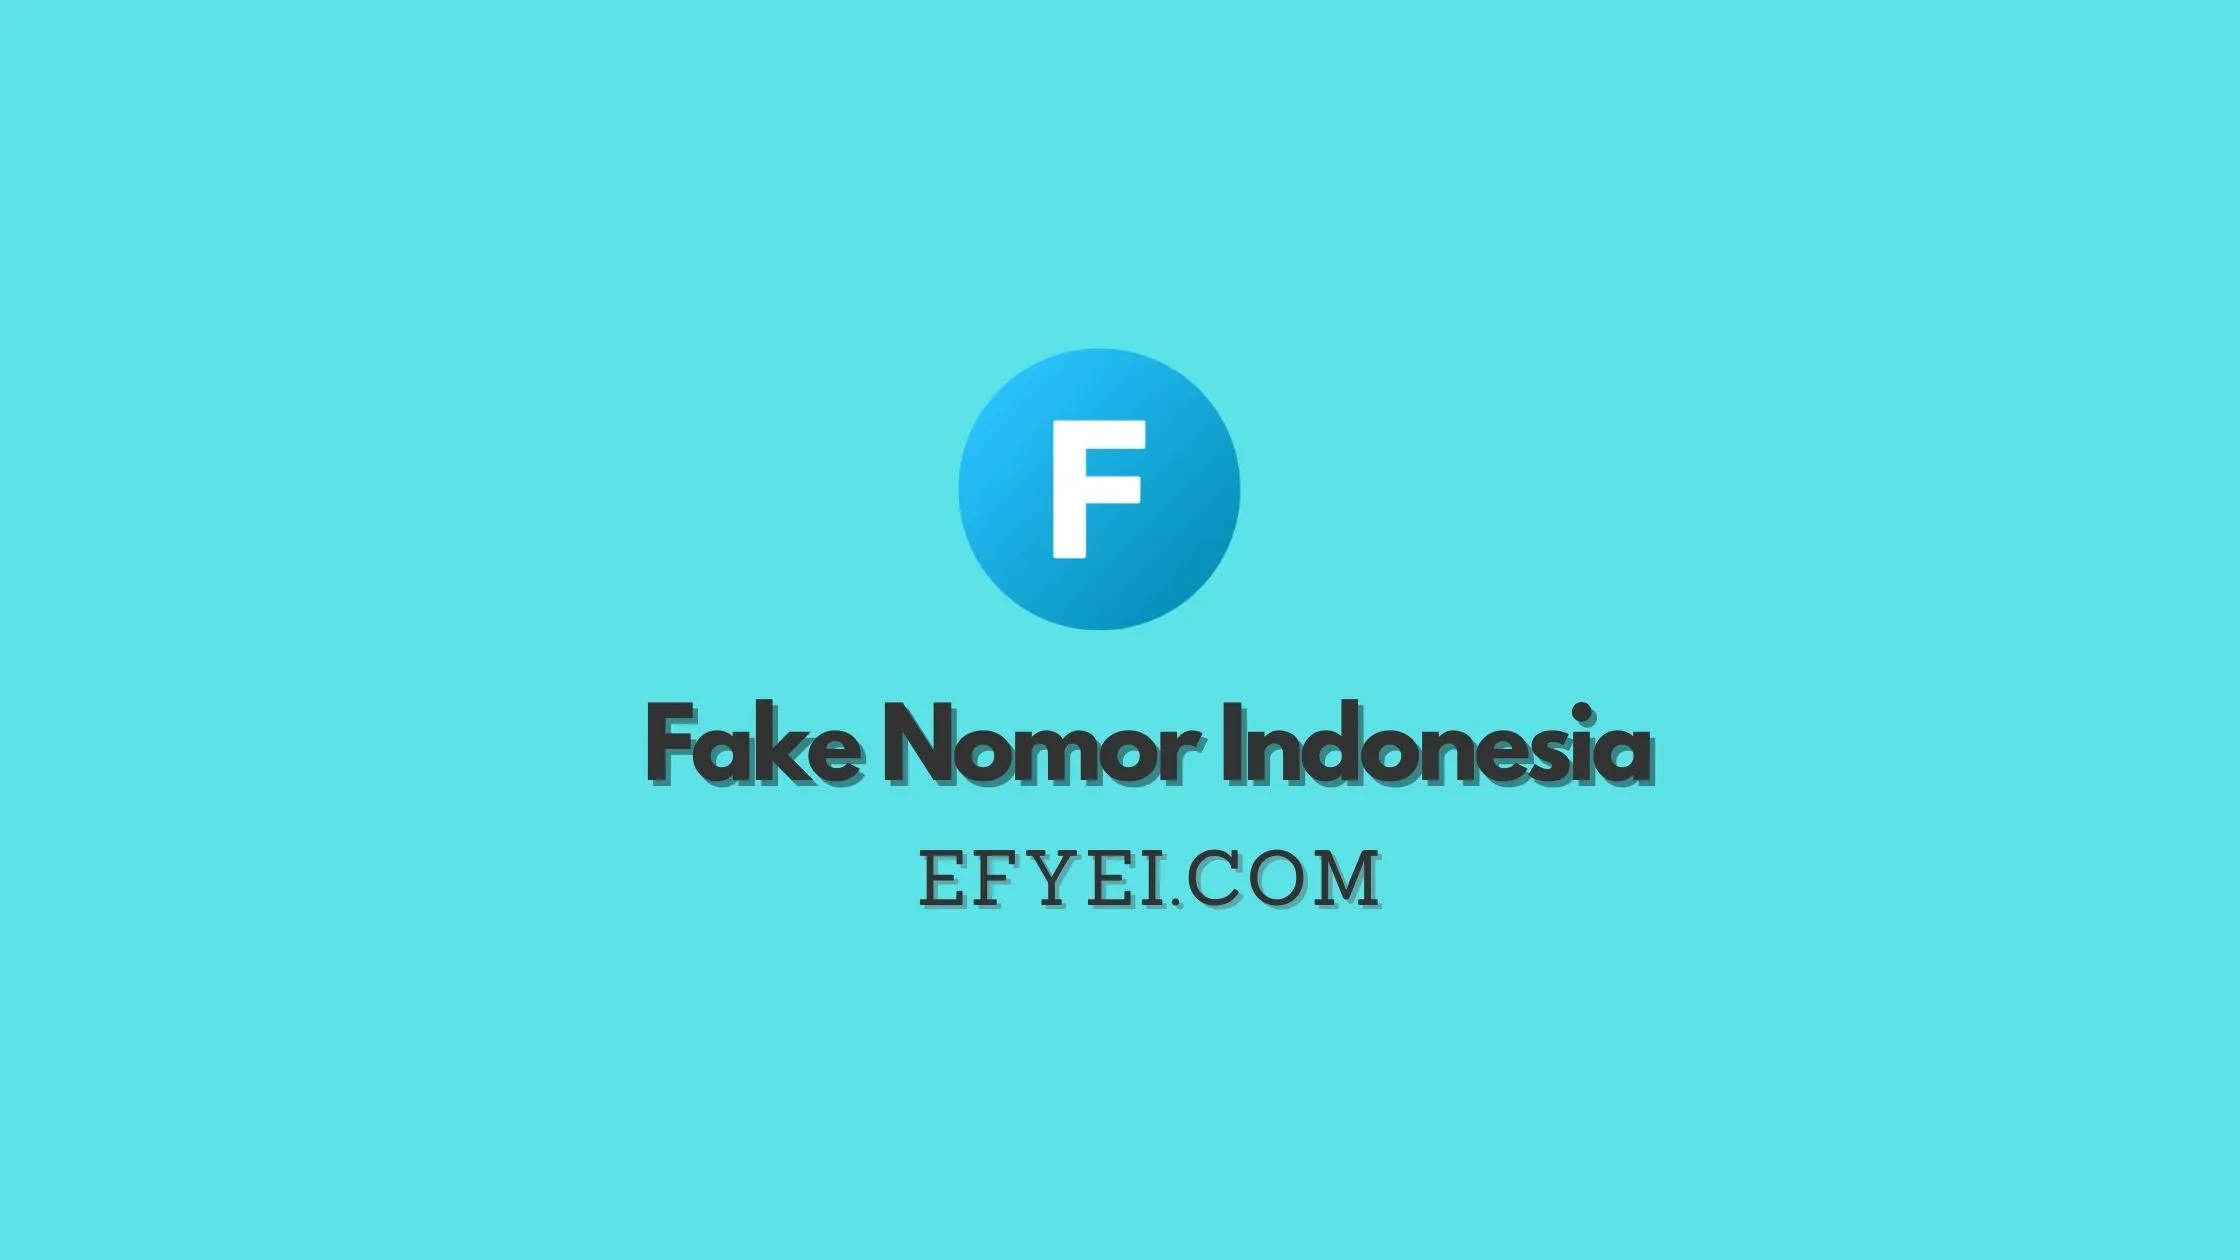 Fake Nomor Indonesia